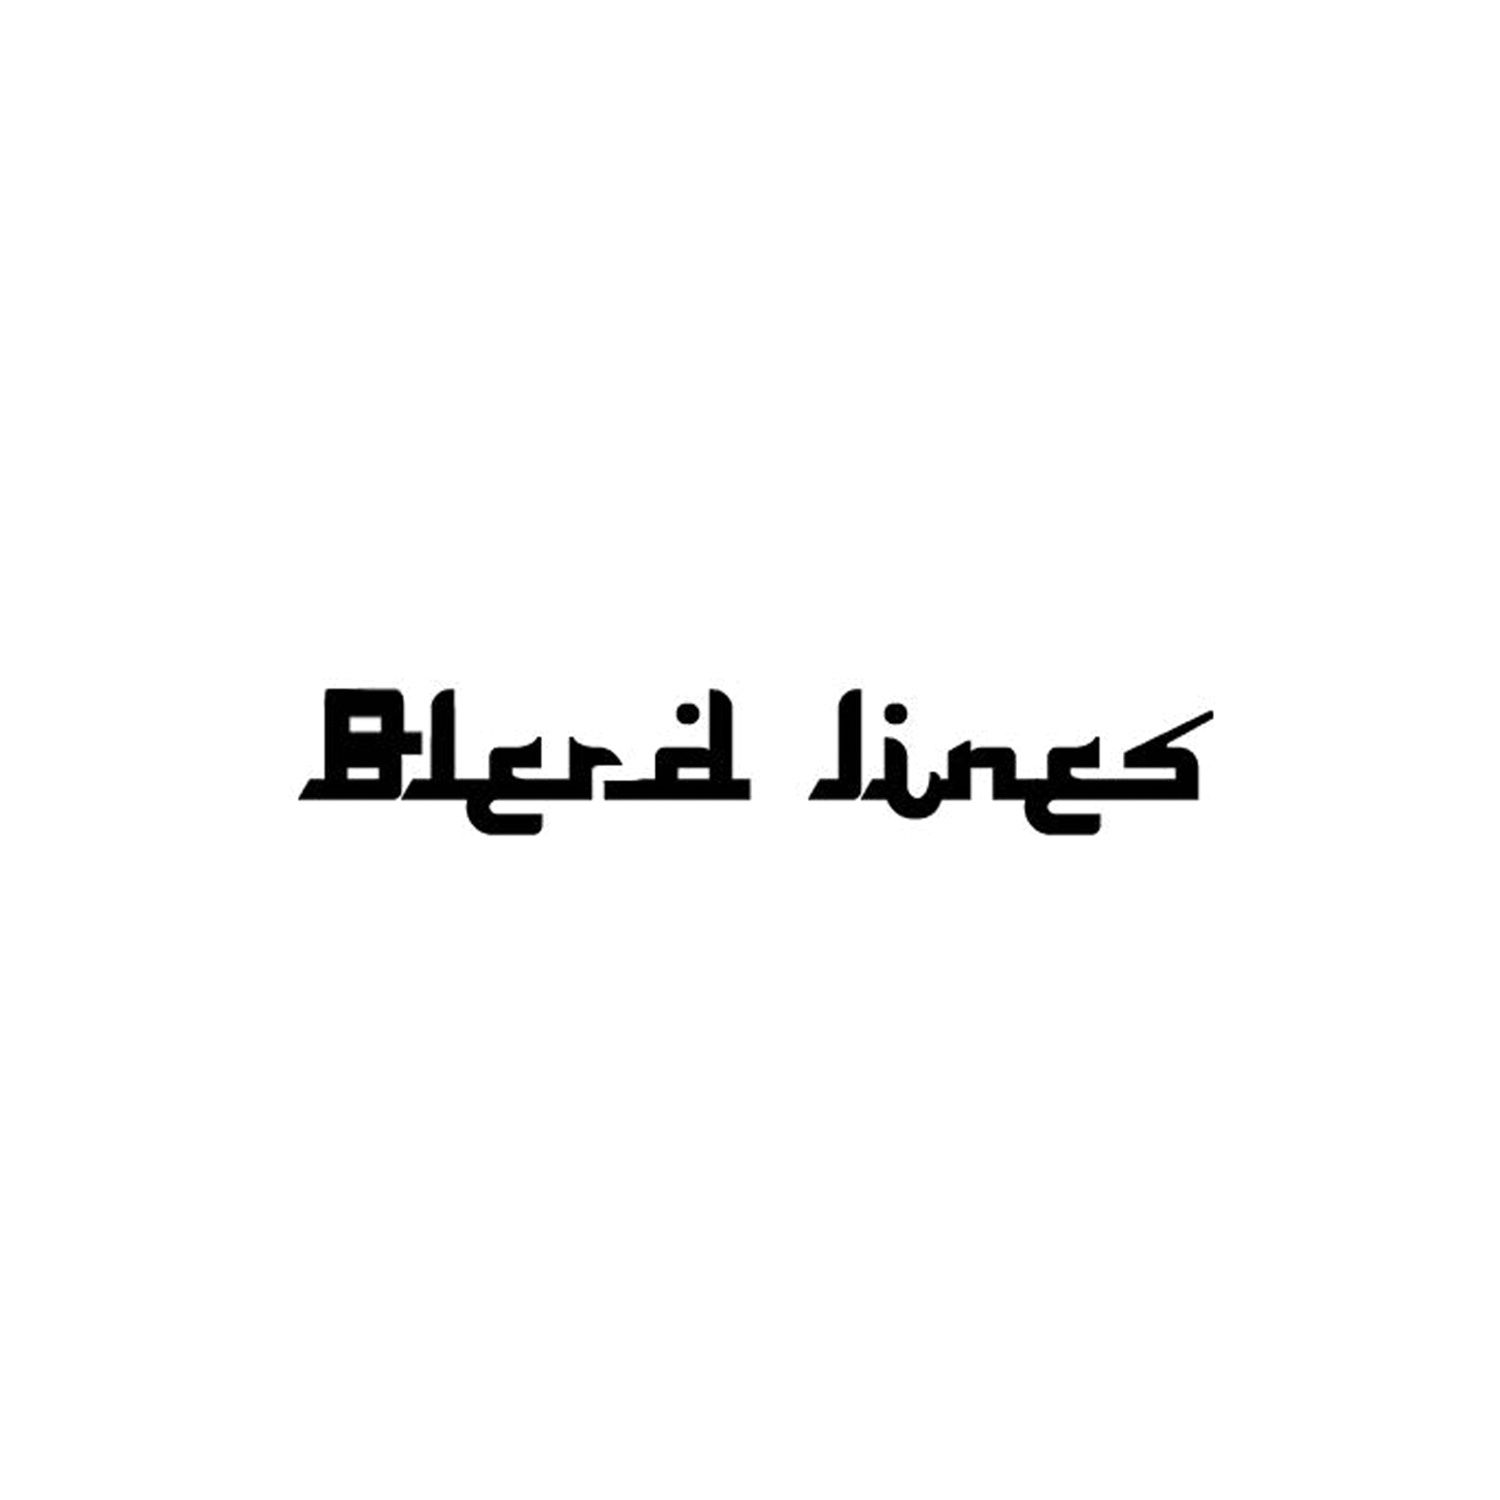 Blerd Lines